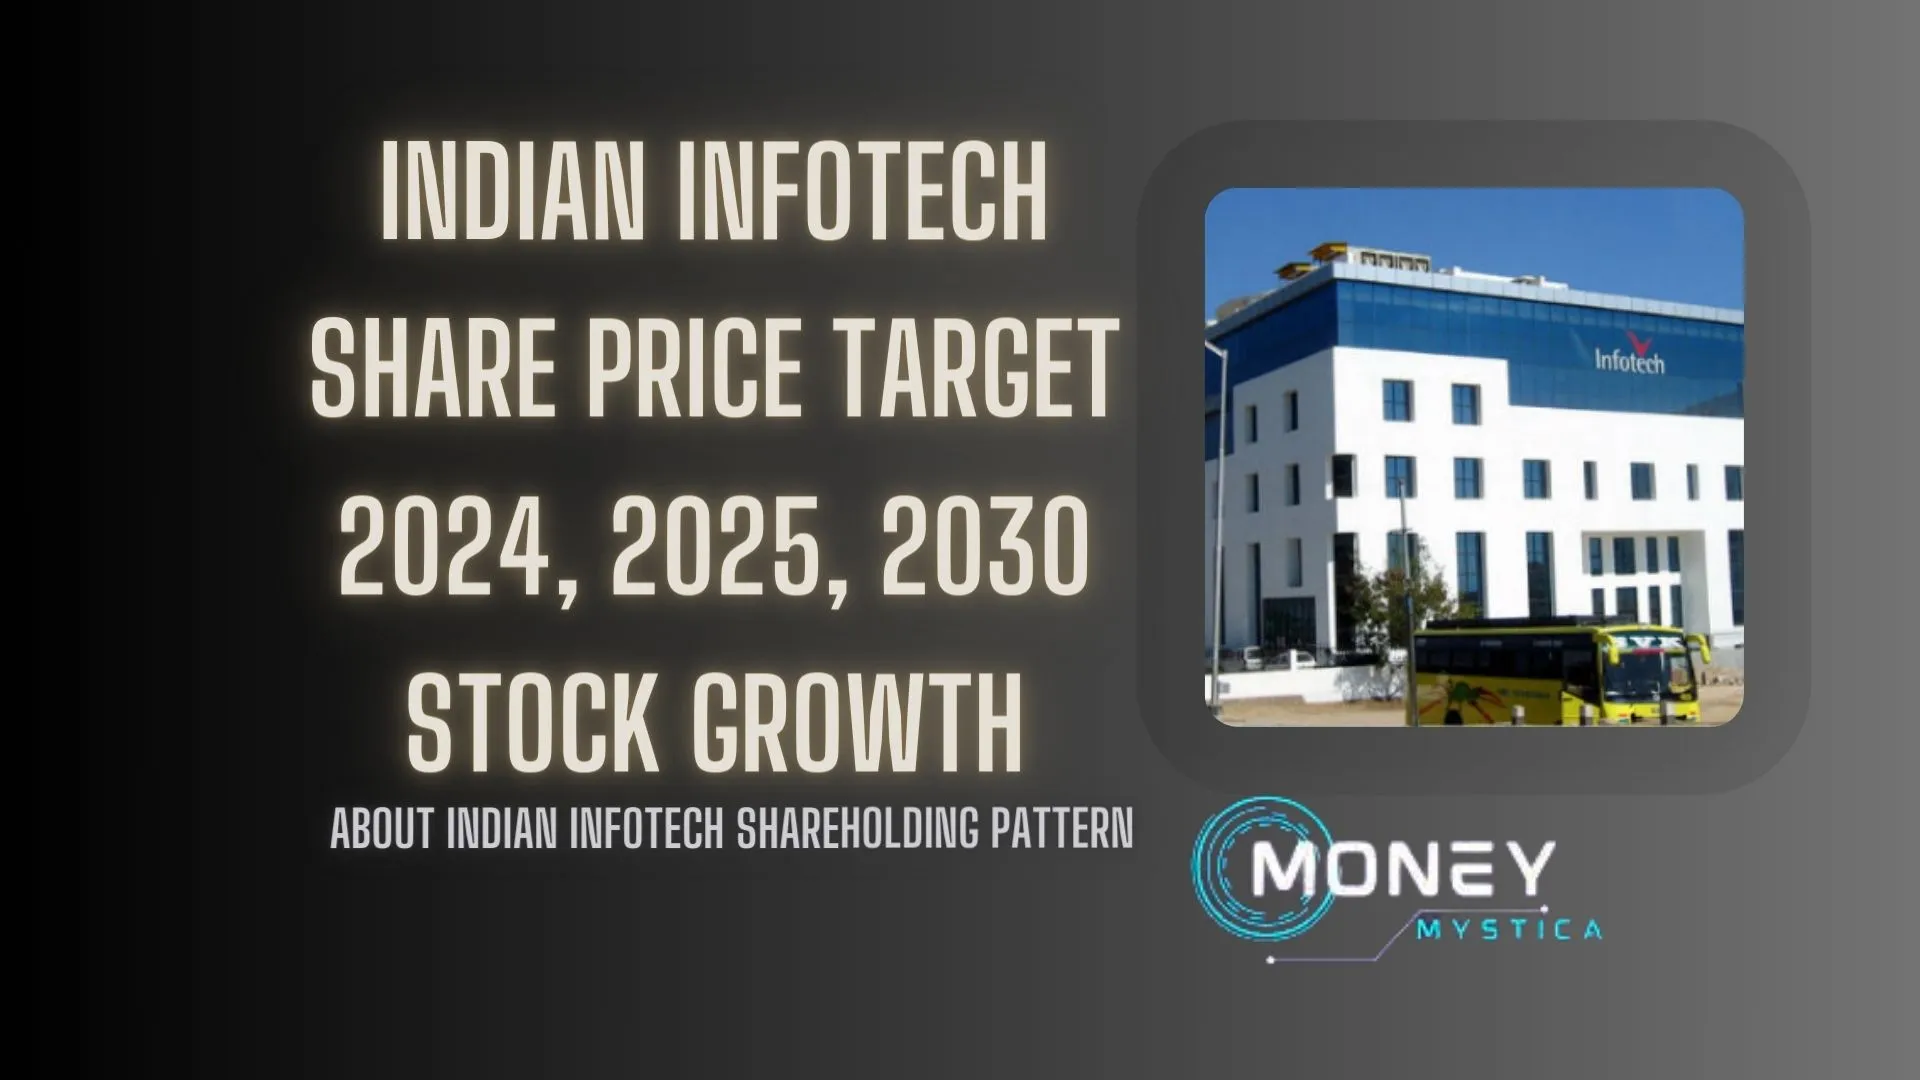 Indian Infotech Share Price Target 2023, 2024, 2025, 2026, 2030 – Stock Analysis